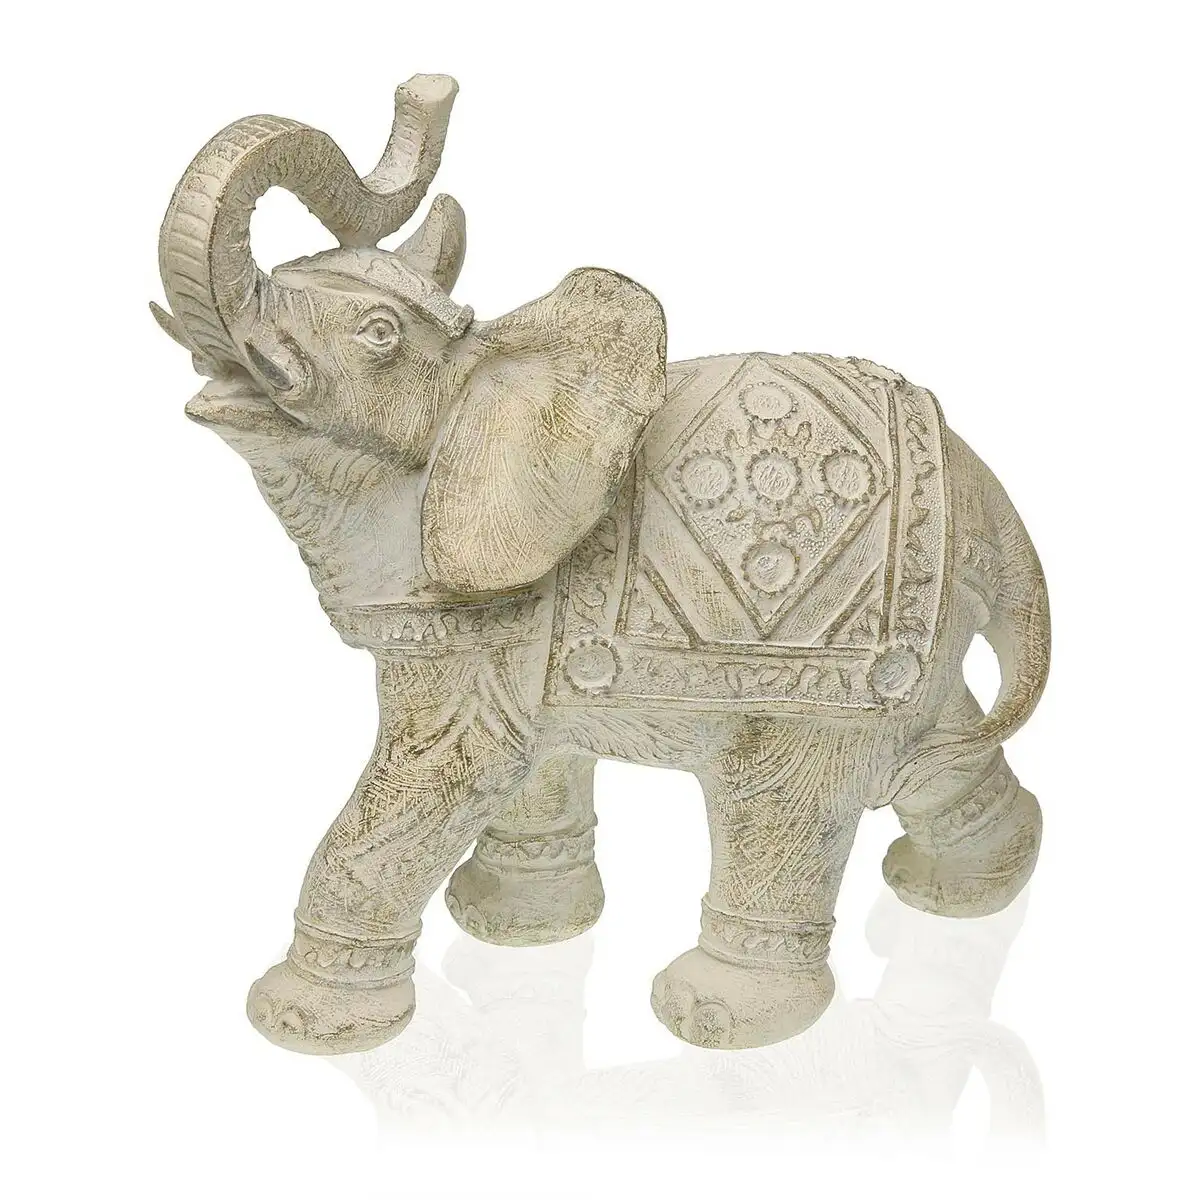 Figurine decorative versa elephant 10 5 x 22 5 x 23 cm resine_6162. Bienvenue chez DIAYTAR SENEGAL - Où Choisir est un Voyage. Plongez dans notre plateforme en ligne pour trouver des produits qui ajoutent de la couleur et de la texture à votre quotidien.